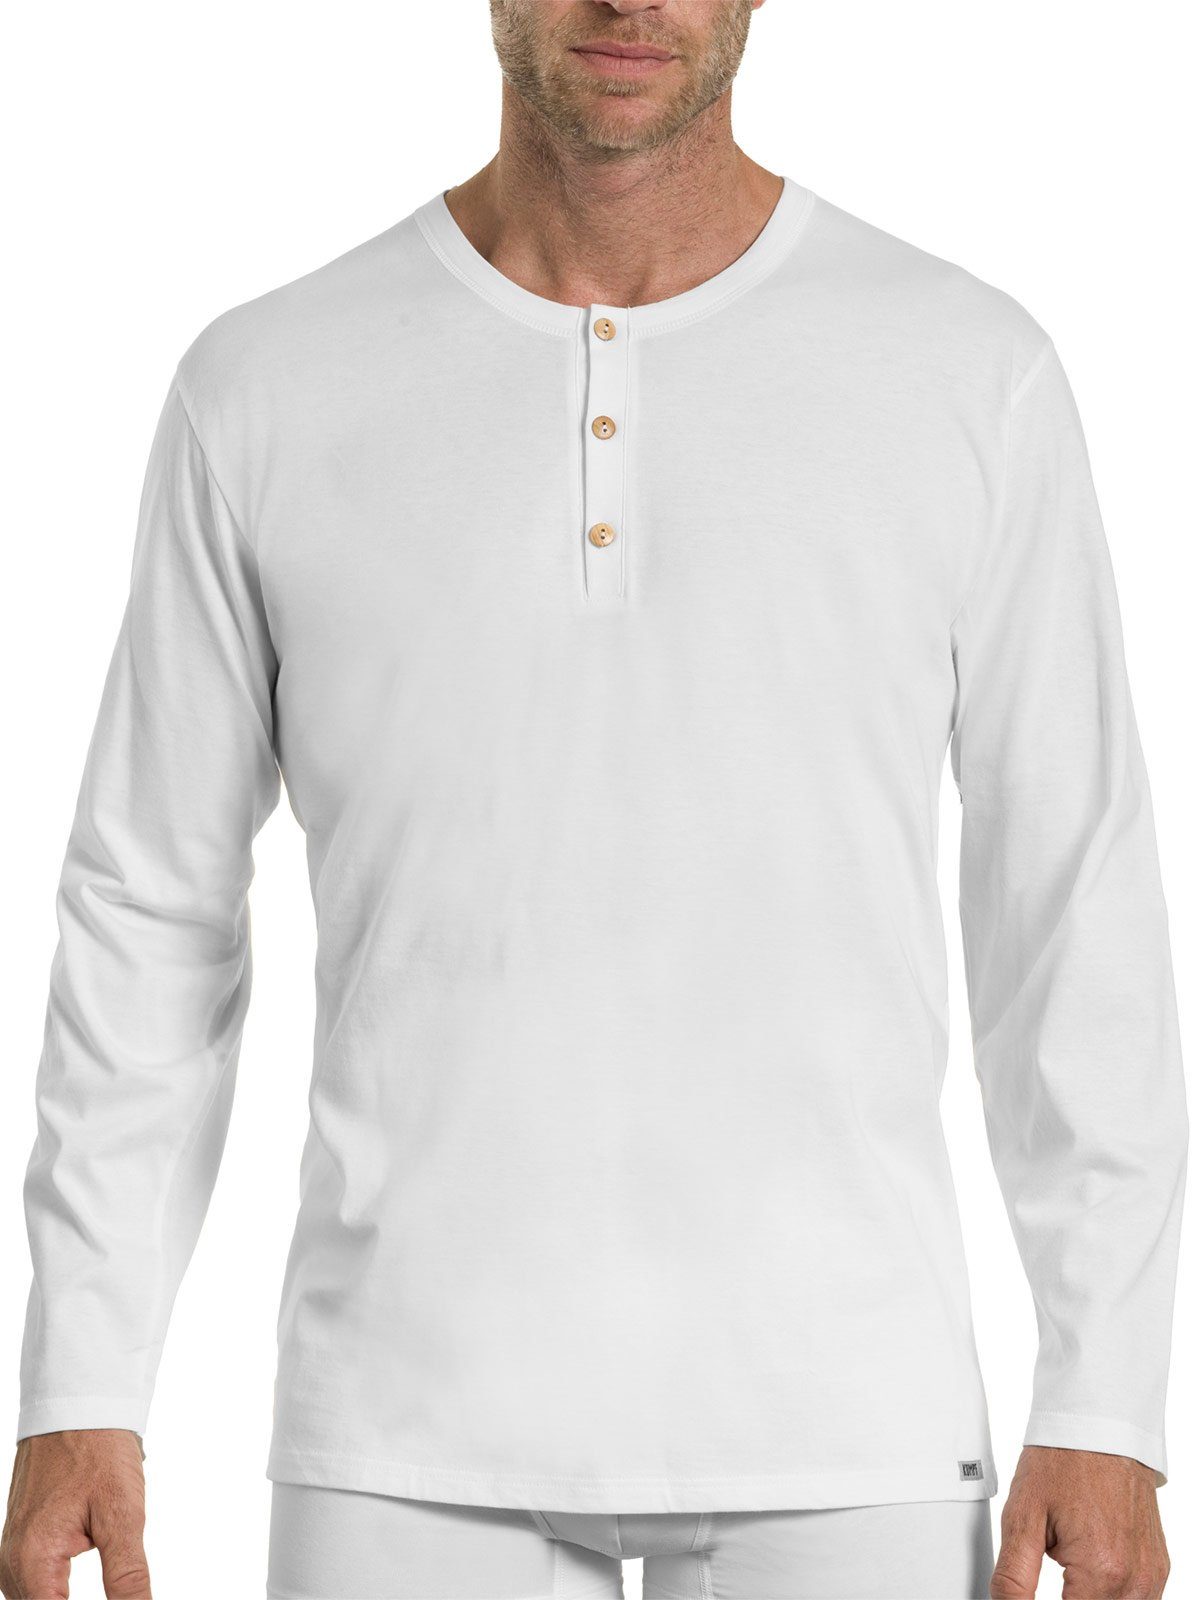 KUMPF Unterhemd Herren langarm Shirt Bio Cotton (Stück, 1-St) hohe Markenqualität weiss